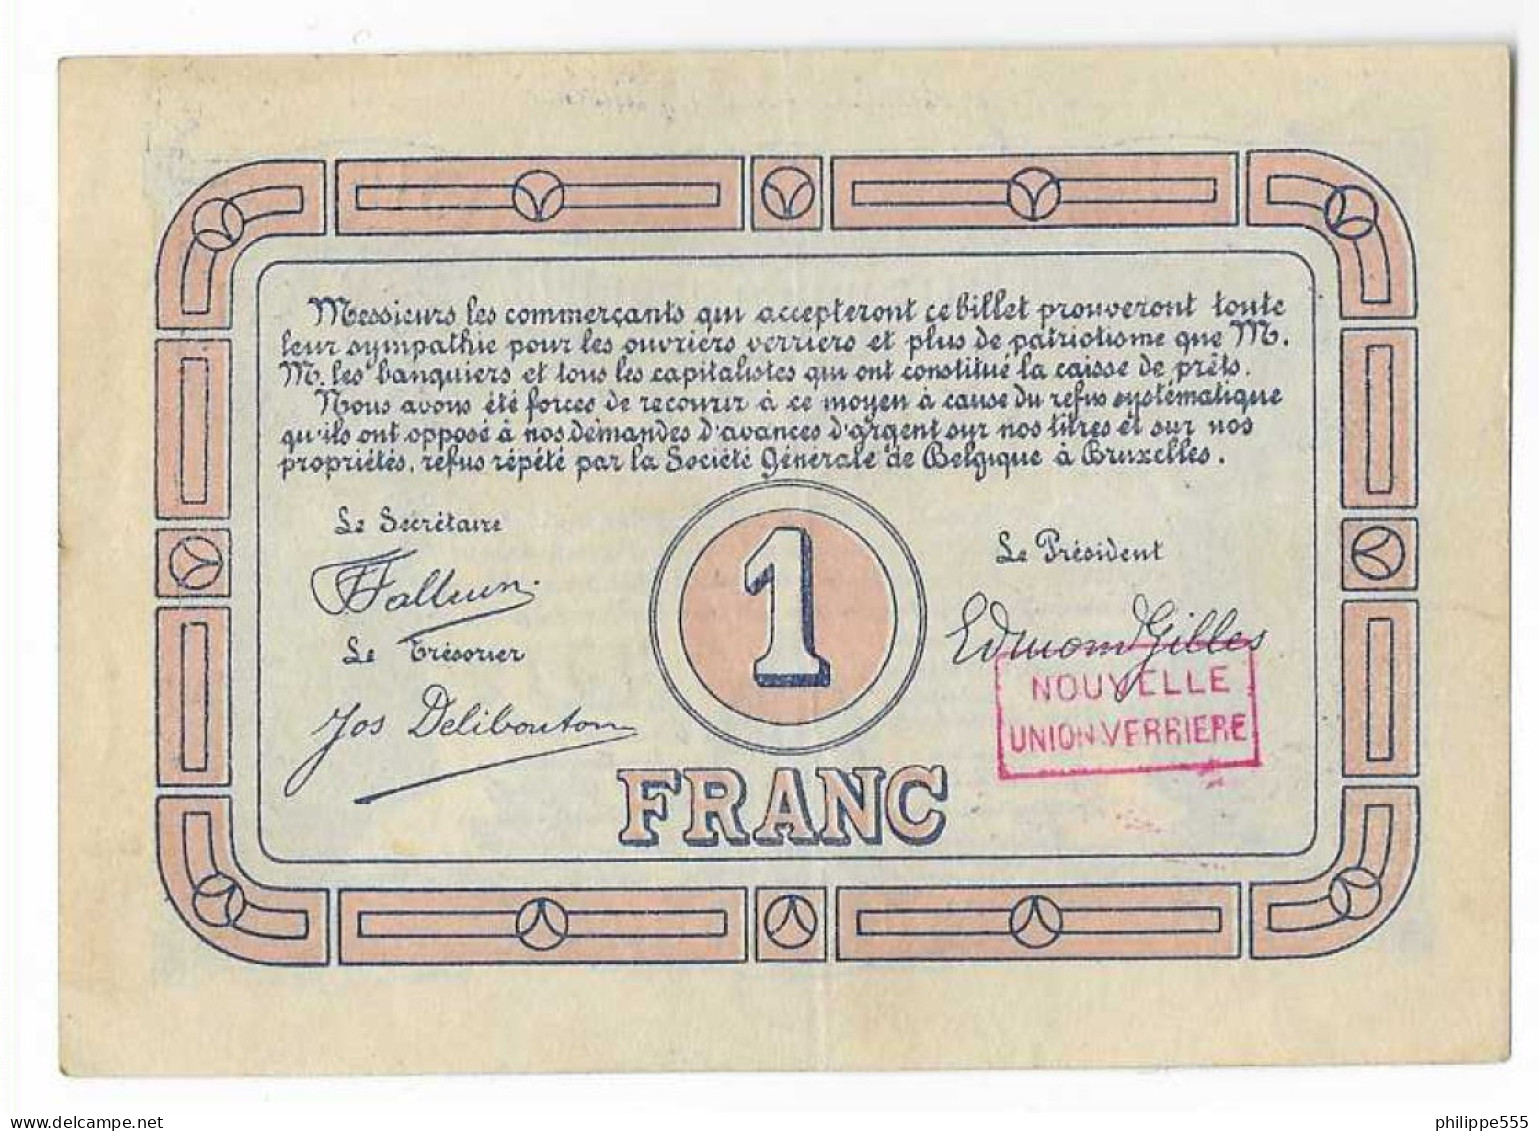 Noodgeld Lodelinsart 1 Frank 1915 - 1-2 Franchi